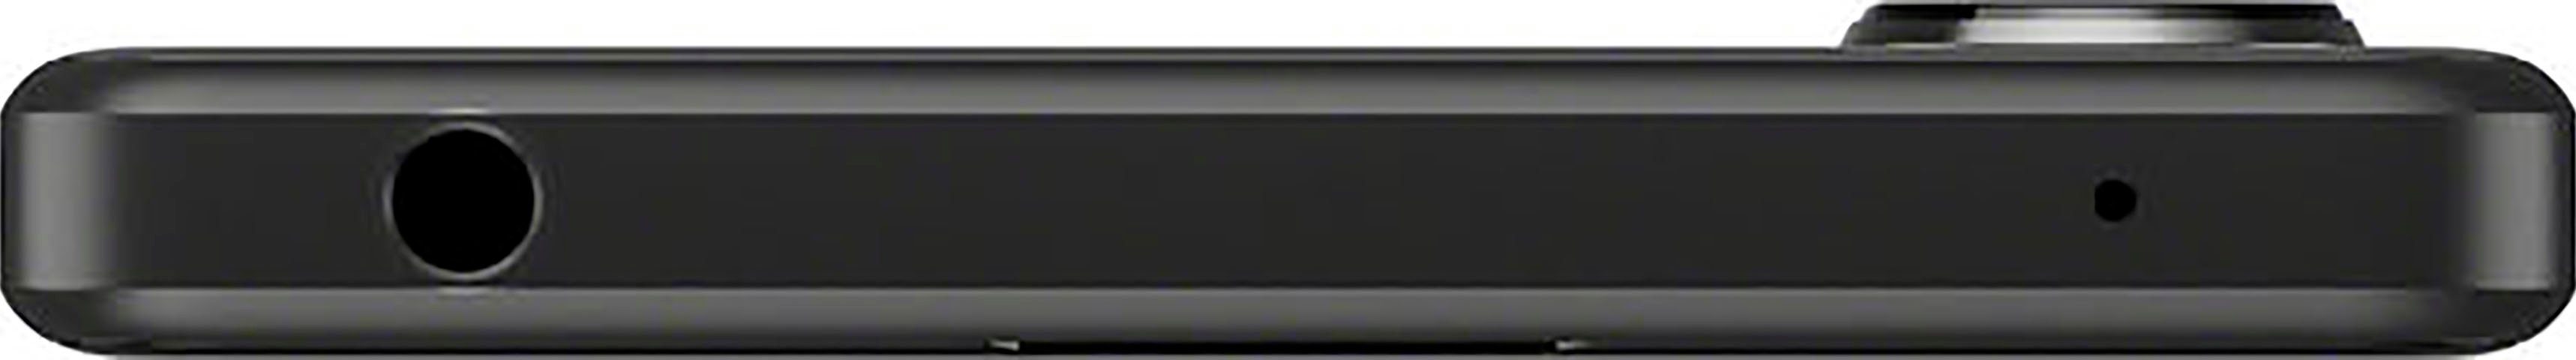 Smartphone schwarz MP Xperia Kamera) (15,49 Sony 5 GB 12 cm/6,1 128 Zoll, Speicherplatz, IV